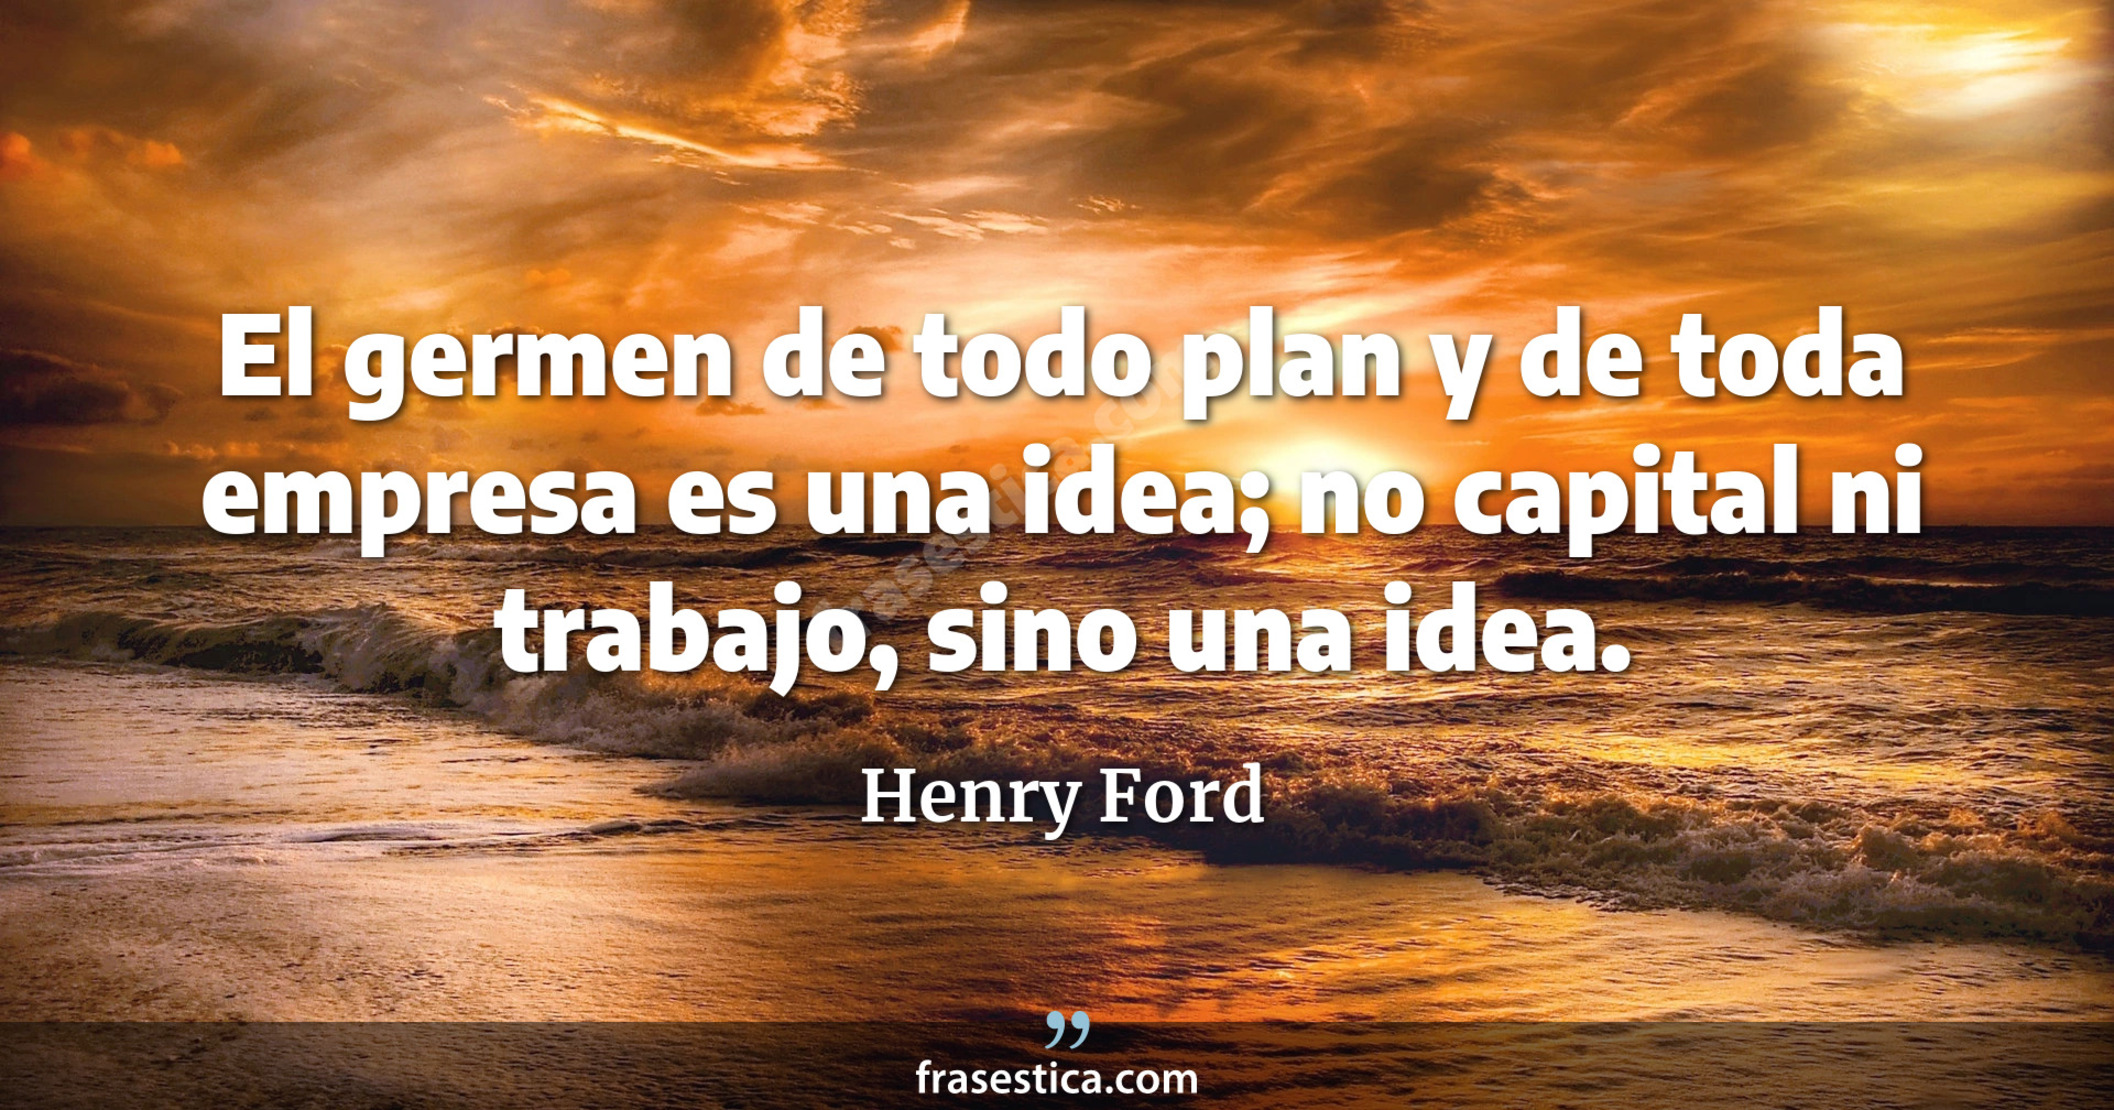 El germen de todo plan y de toda empresa es una idea; no capital ni trabajo, sino una idea. - Henry Ford